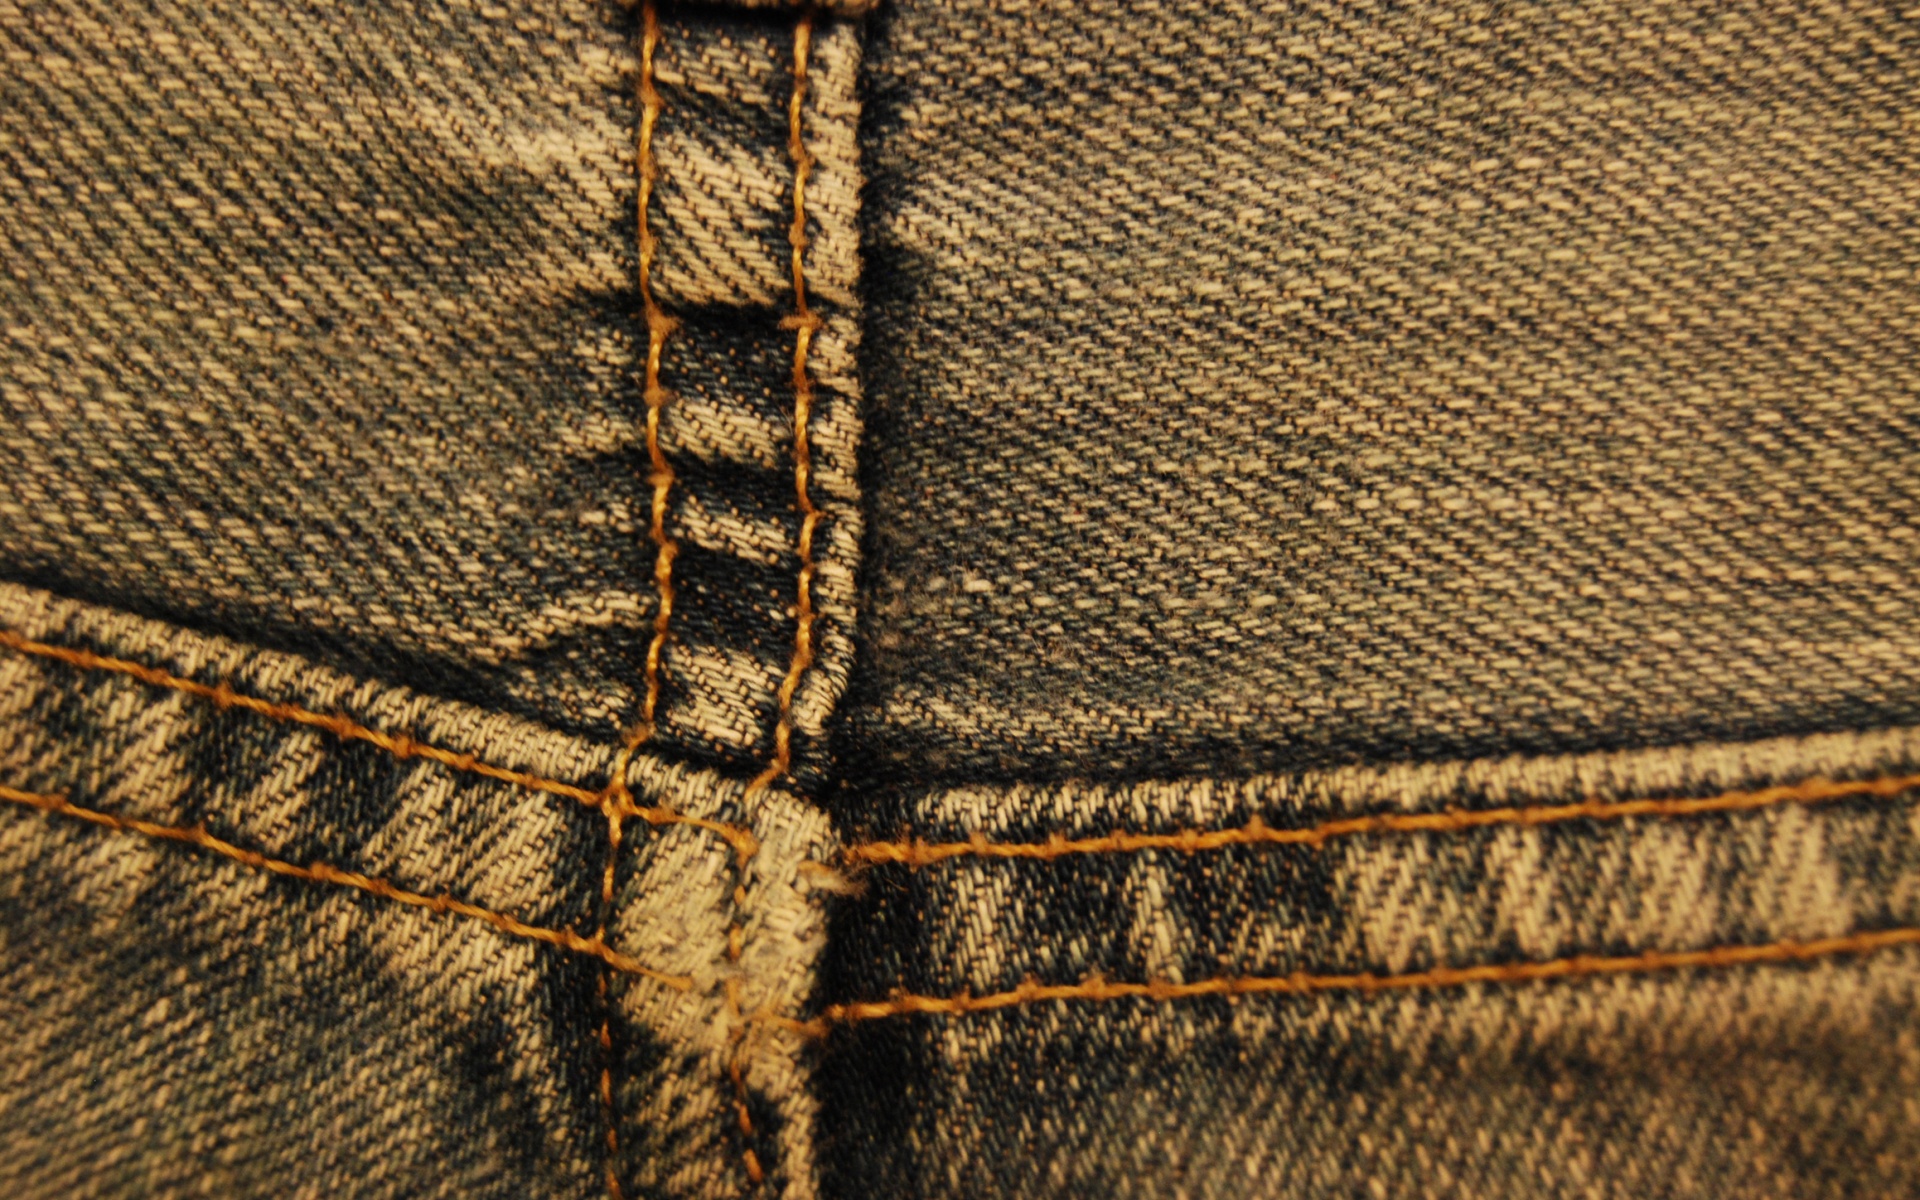 одежда пуговица джинсы clothing button jeans скачать